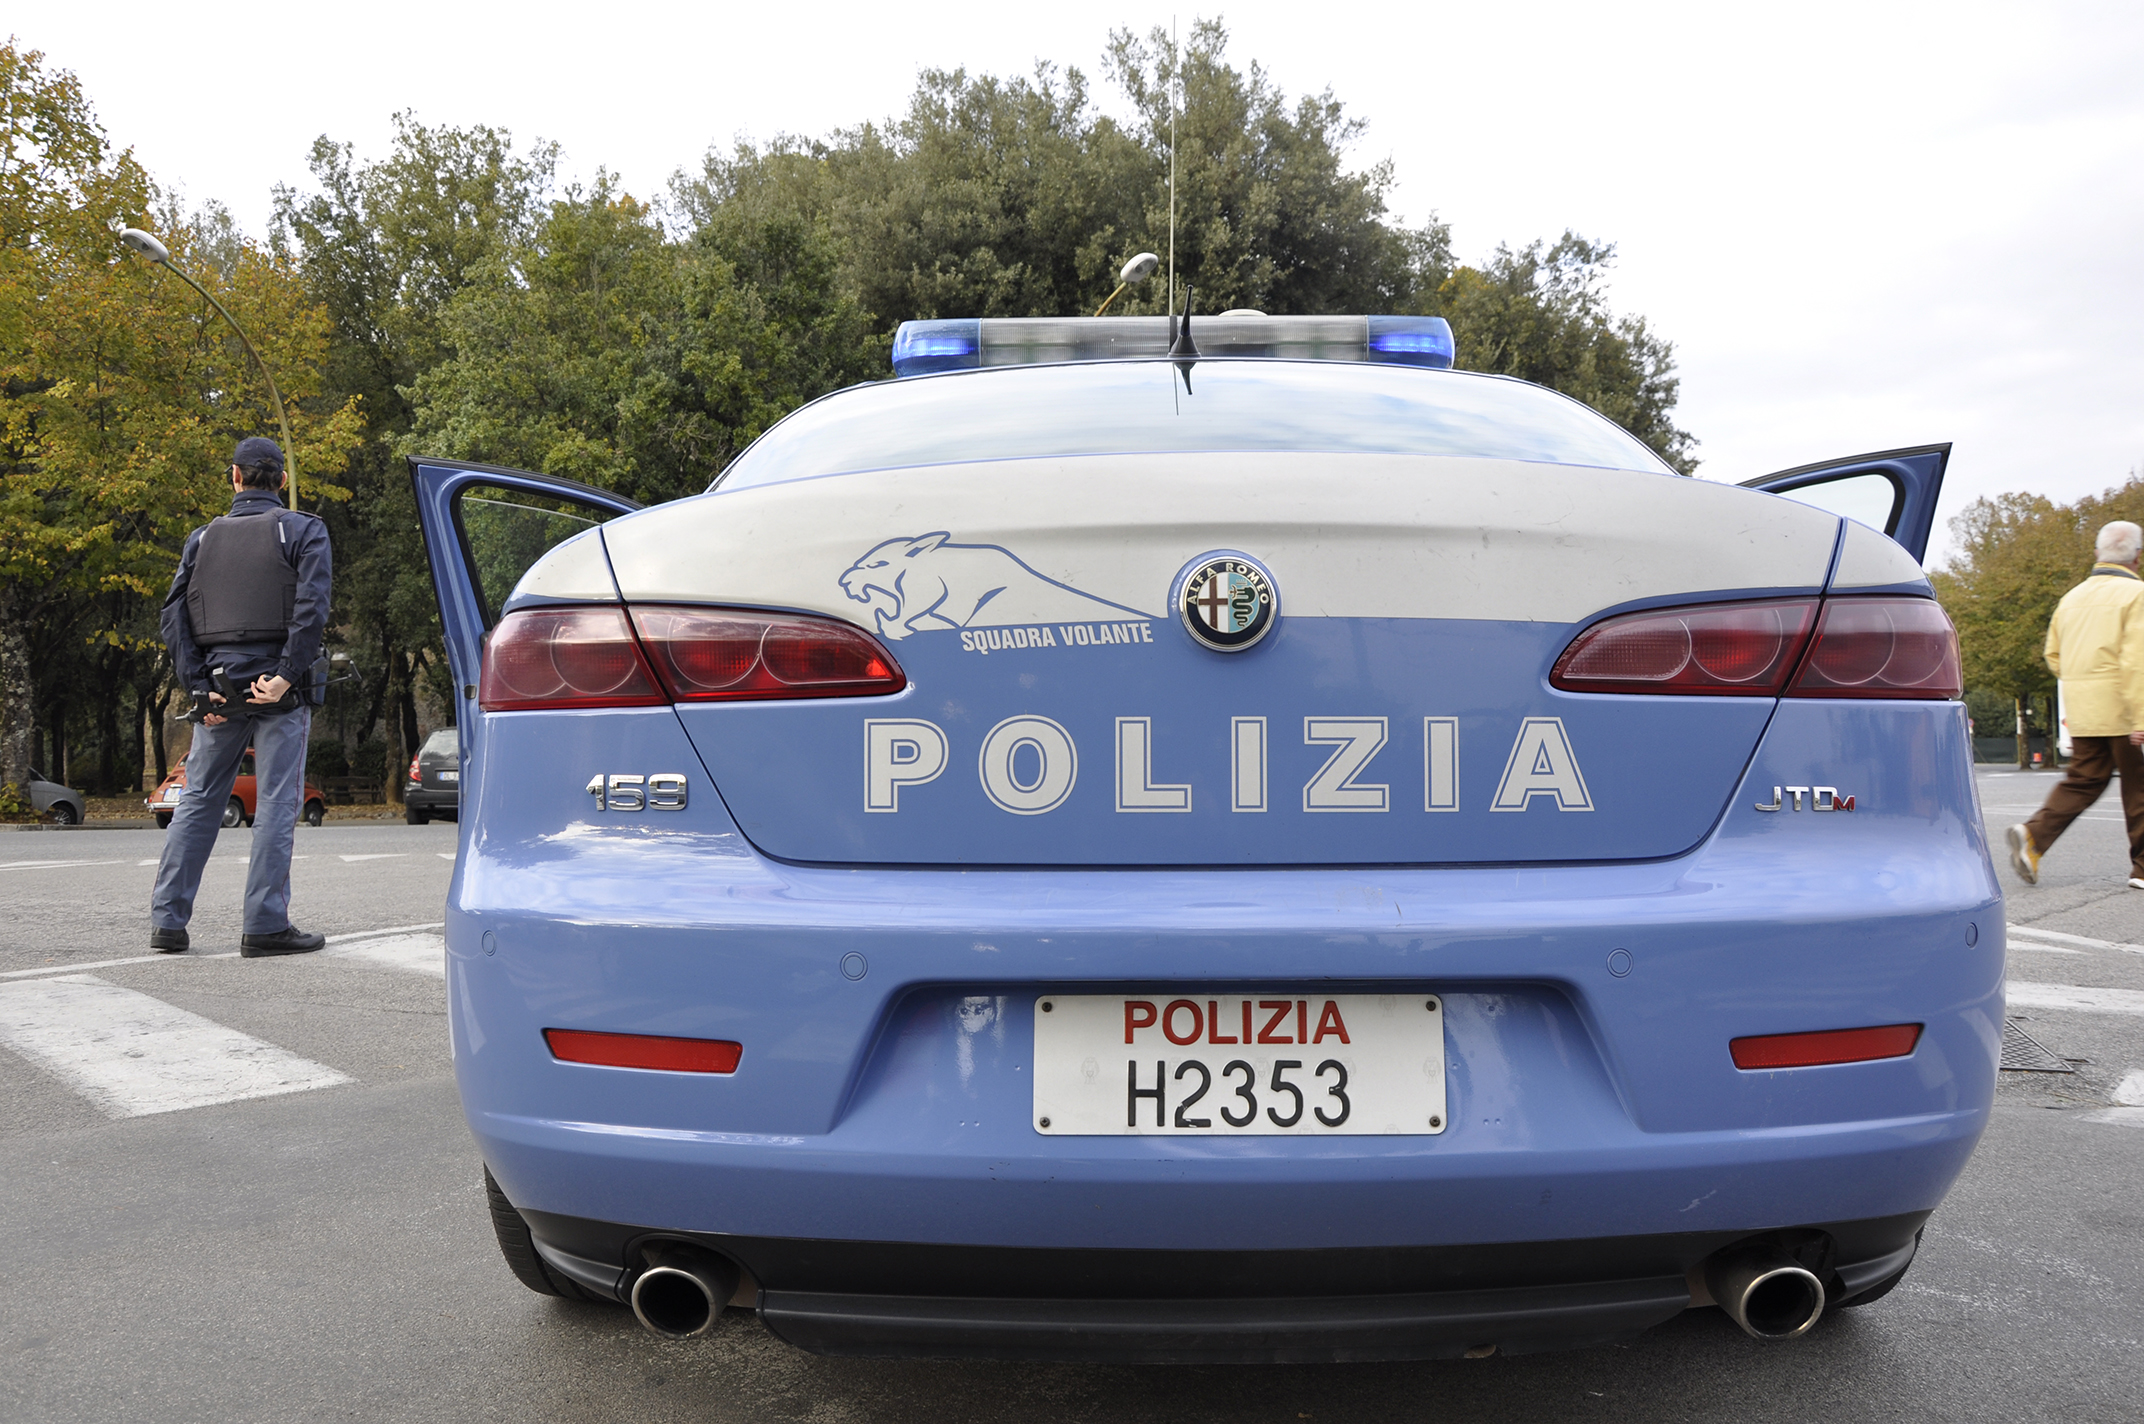 Polizia di Stato :  La Squadra Volante arresta 2 individui per furto su autovetture in sosta